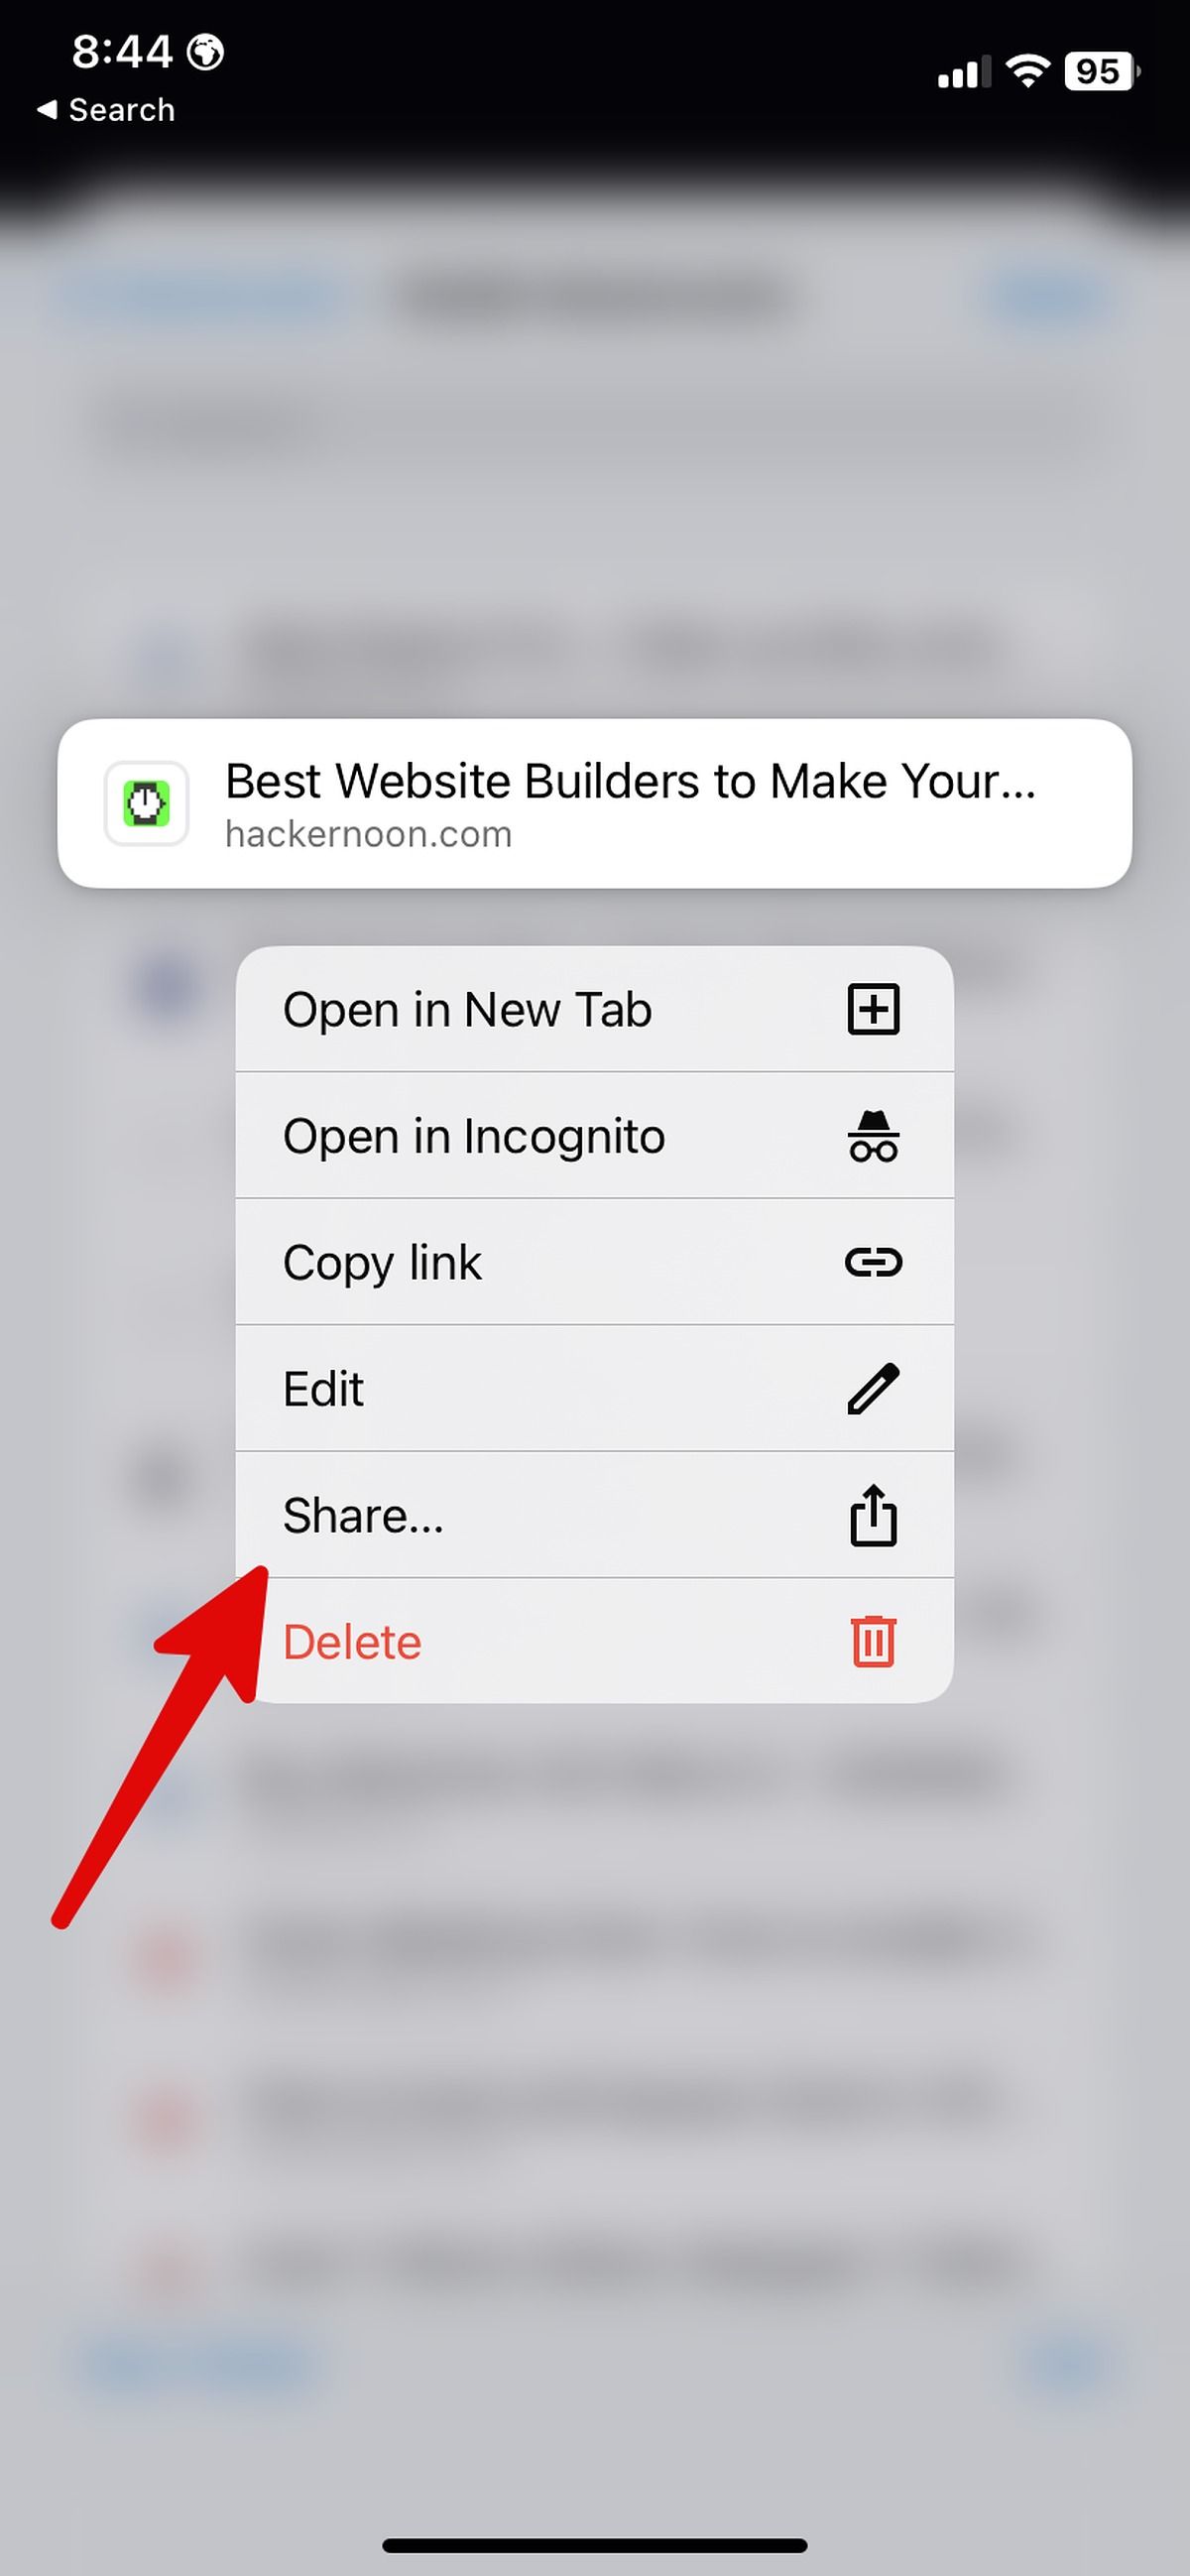 Uma seta vermelha apontando para a opção Compartilhar no menu de contexto do iOS após pressionar um link por um longo tempo